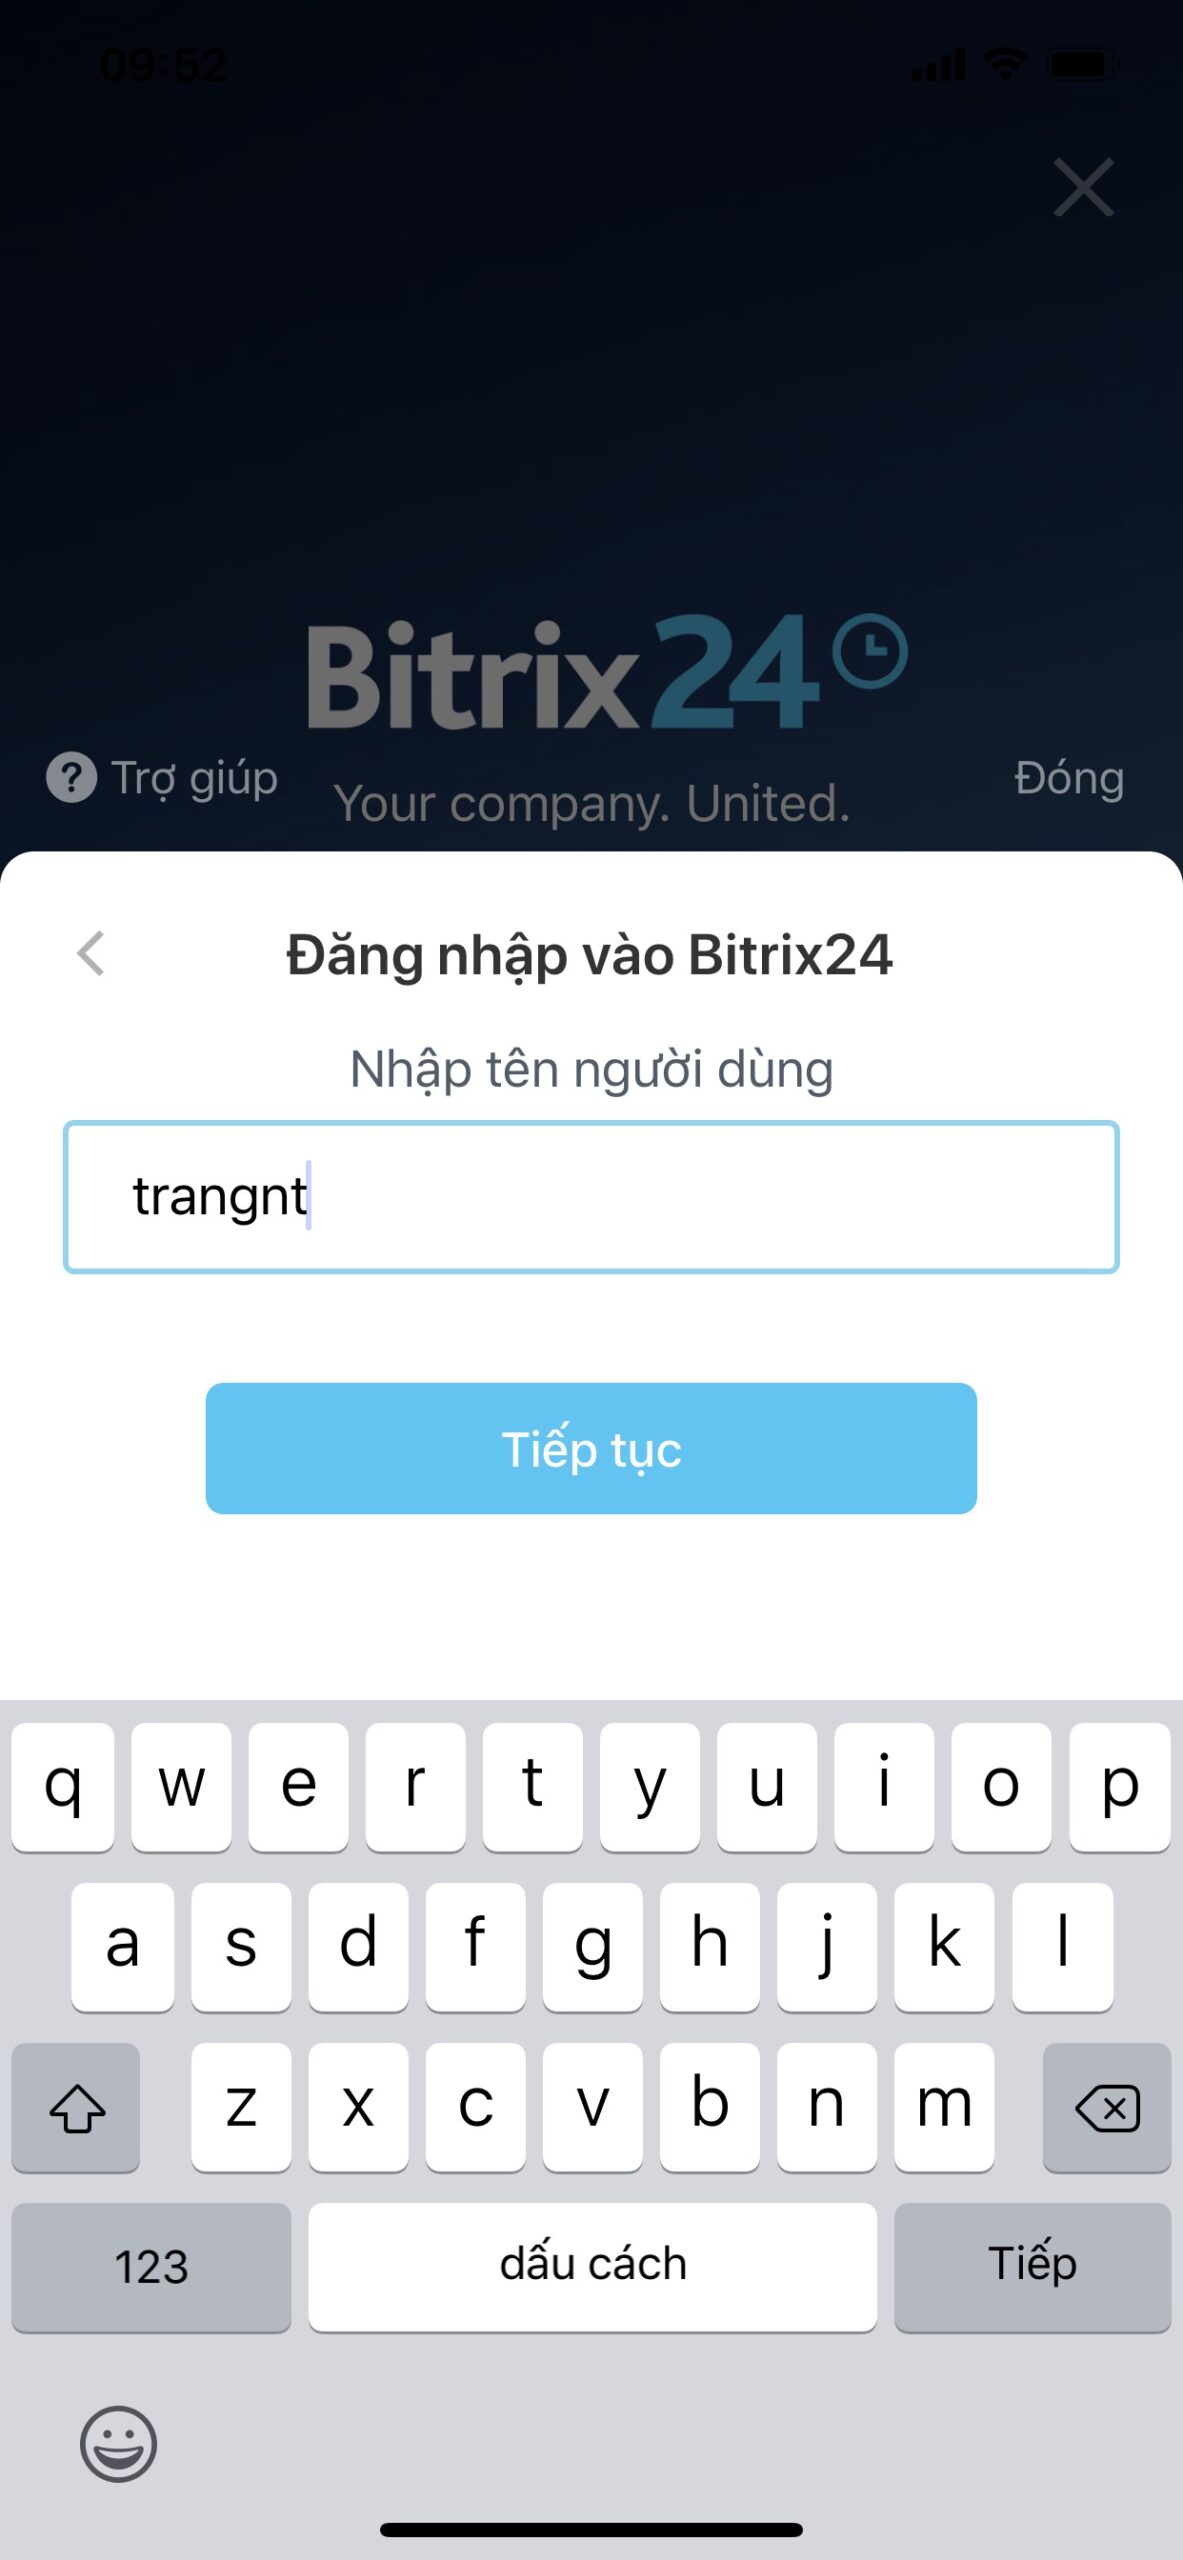 Bước 3 để đăng nhập Bitrix24 trên điện thoại